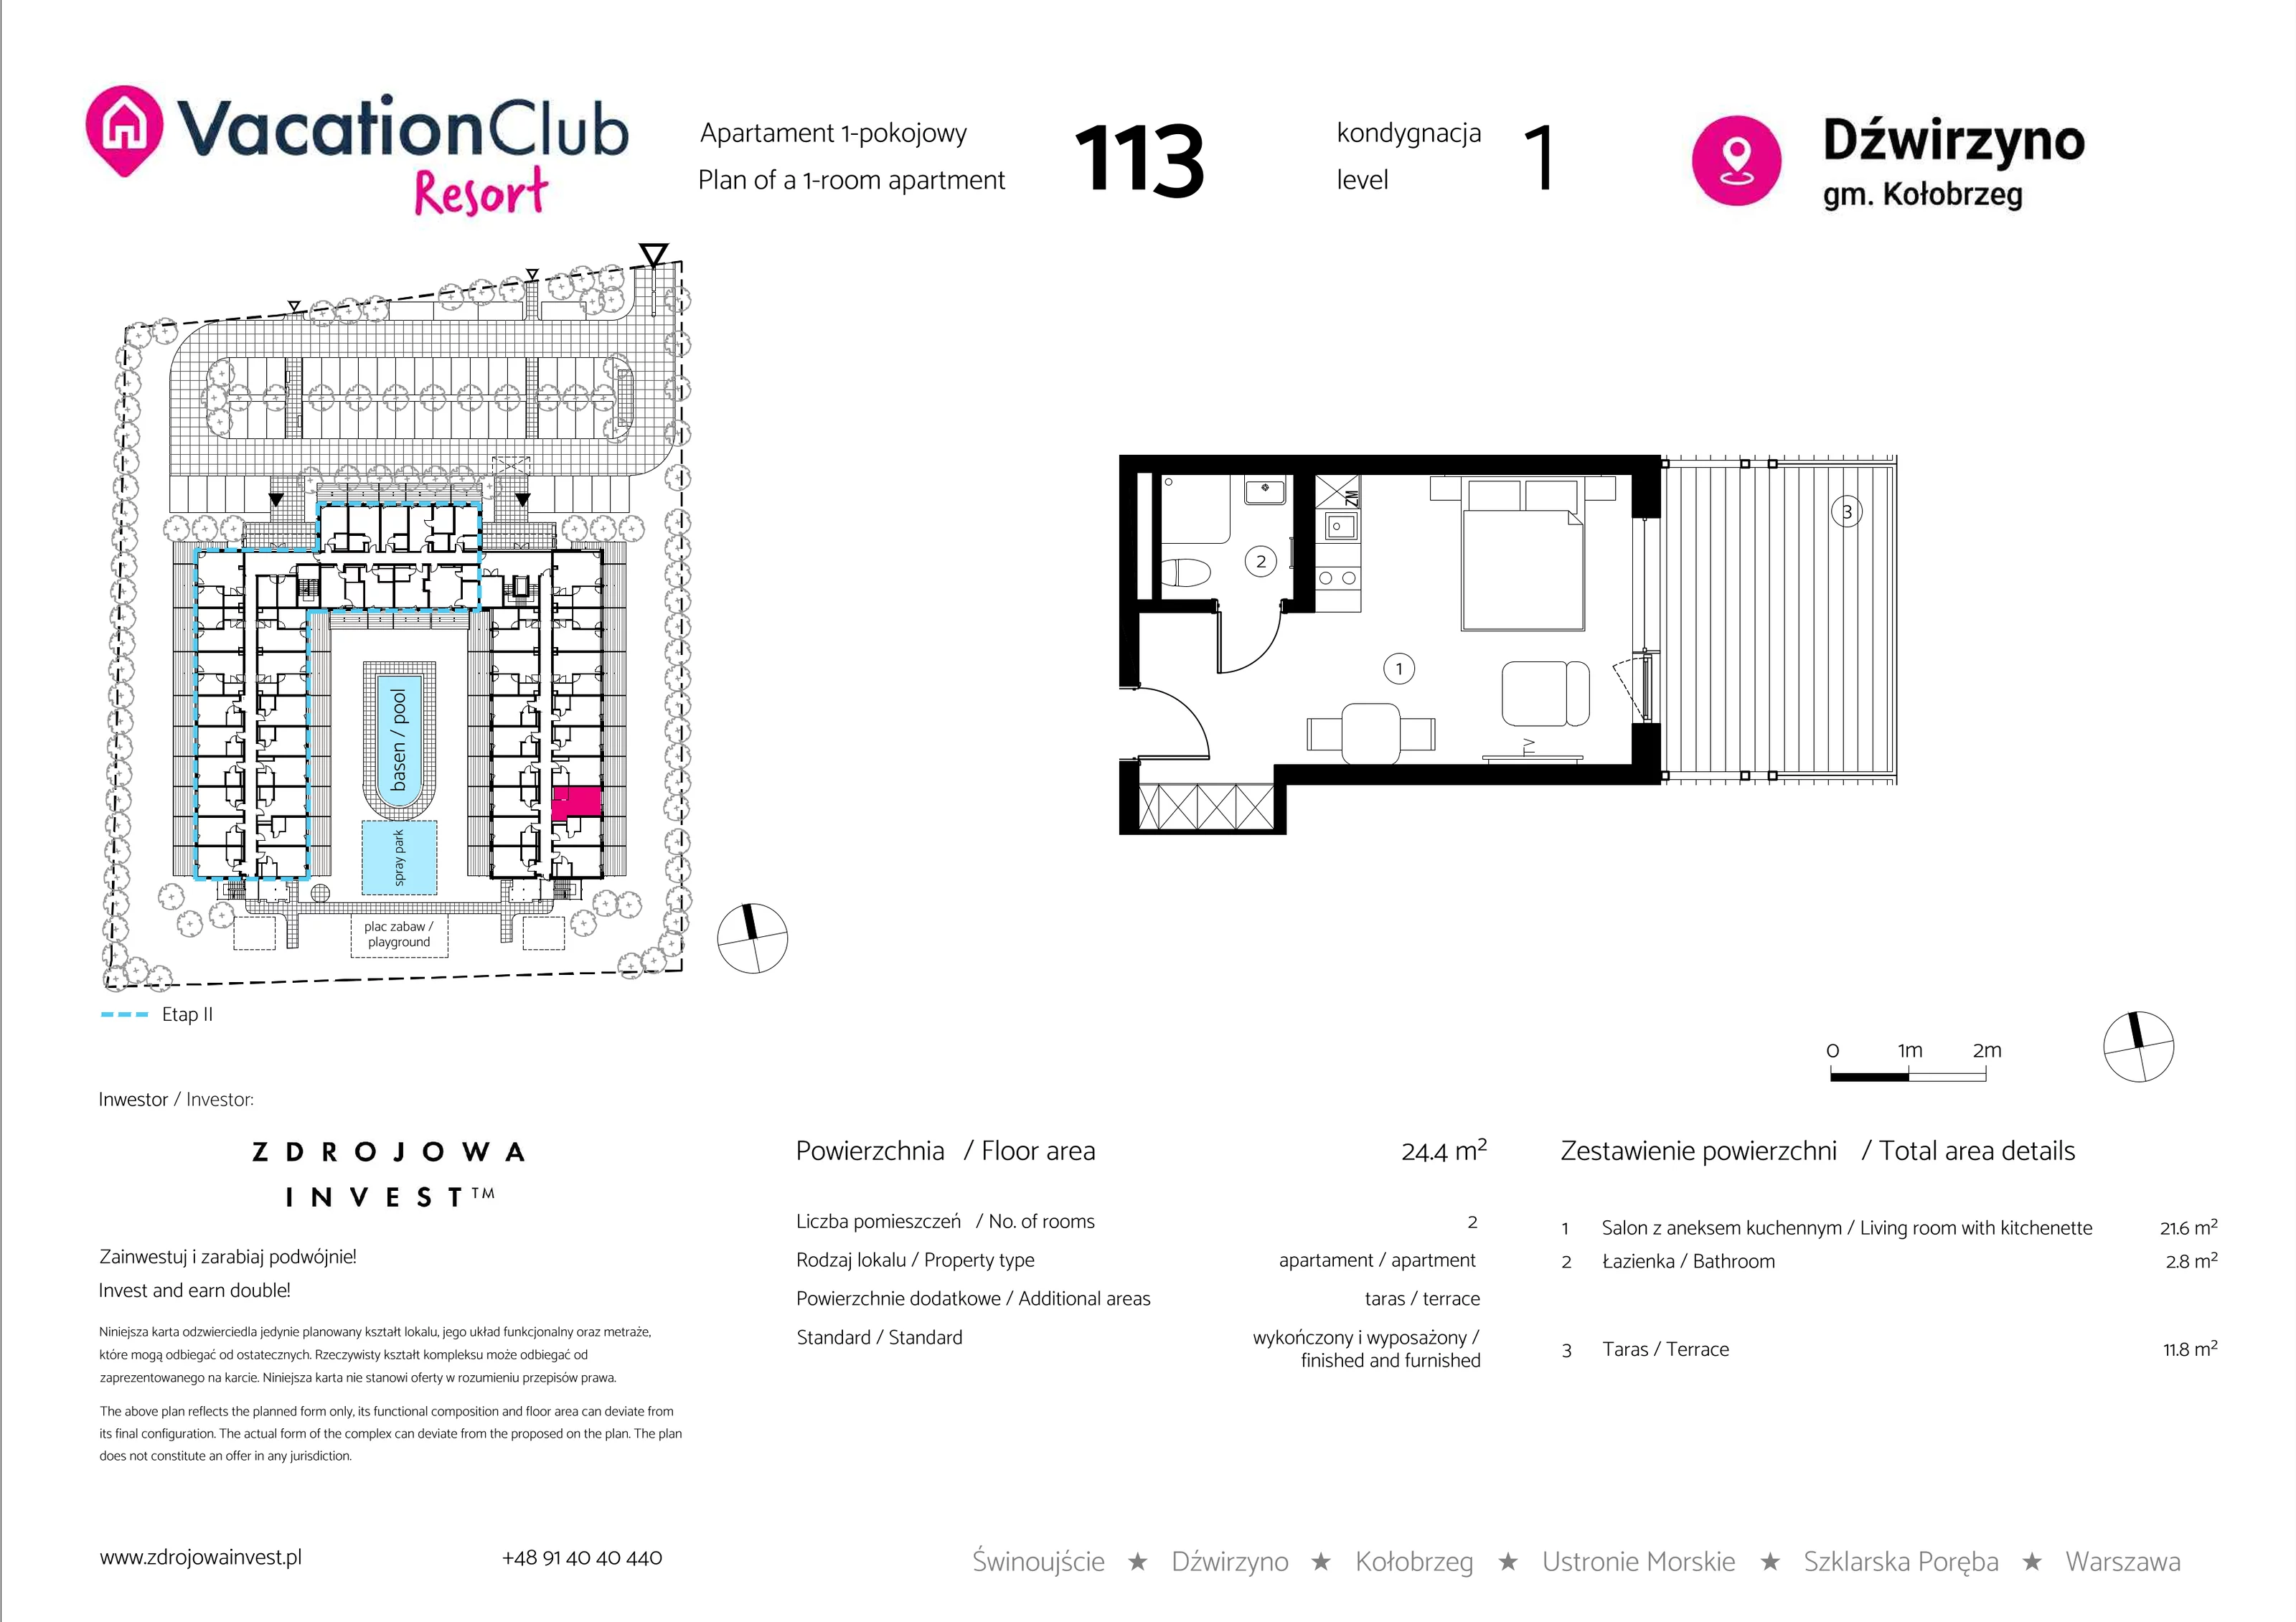 Apartament 24,40 m², parter, oferta nr 113, Vacation Club Resort - apartamenty wakacyjne, Dźwirzyno, ul. Wczasowa 8